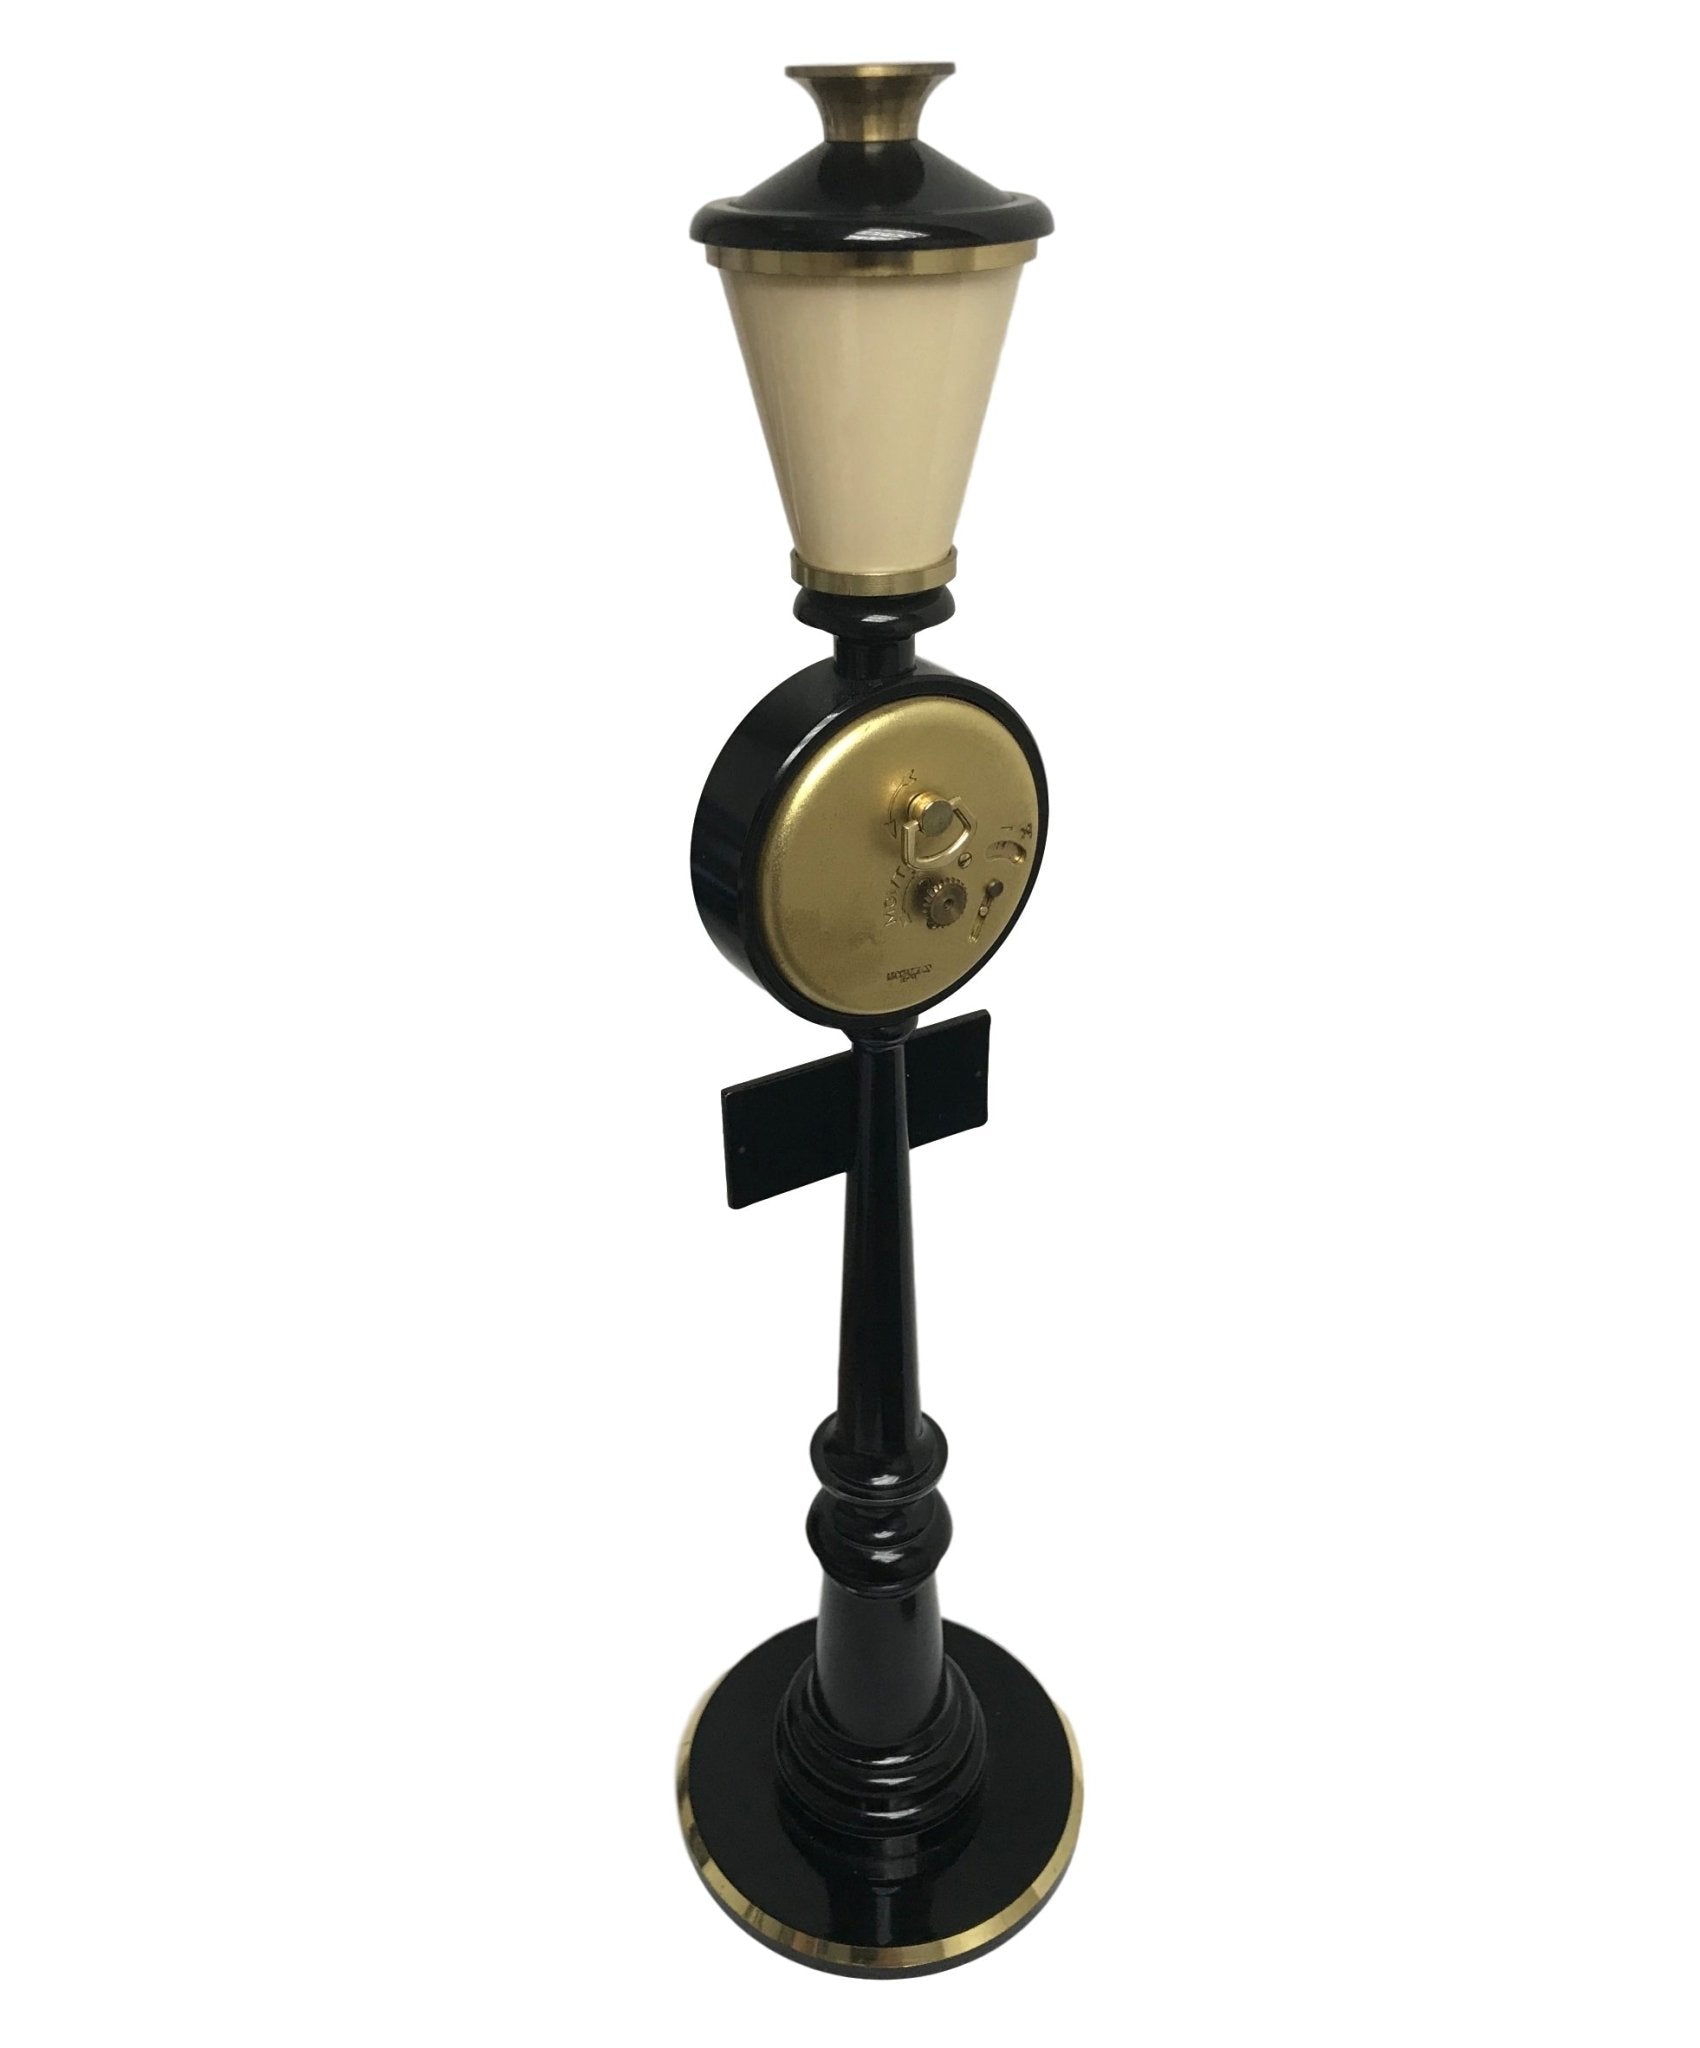 Jaeger-LeCoultre ‘Rue De La Paix’ Street Lamp Clock